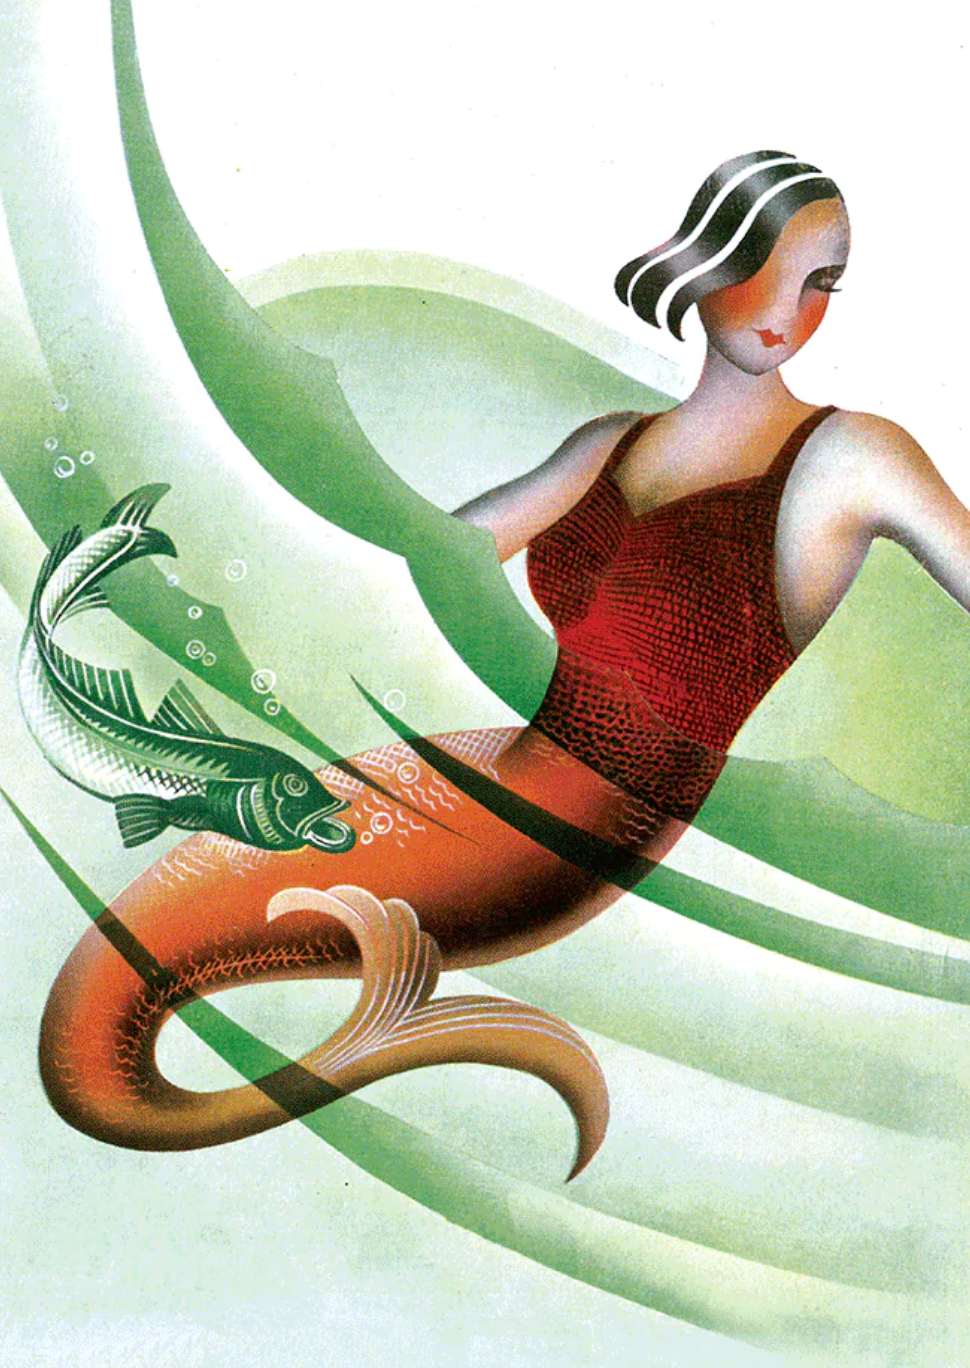 Mermaid in a Suit - Mermaids Greeting Card